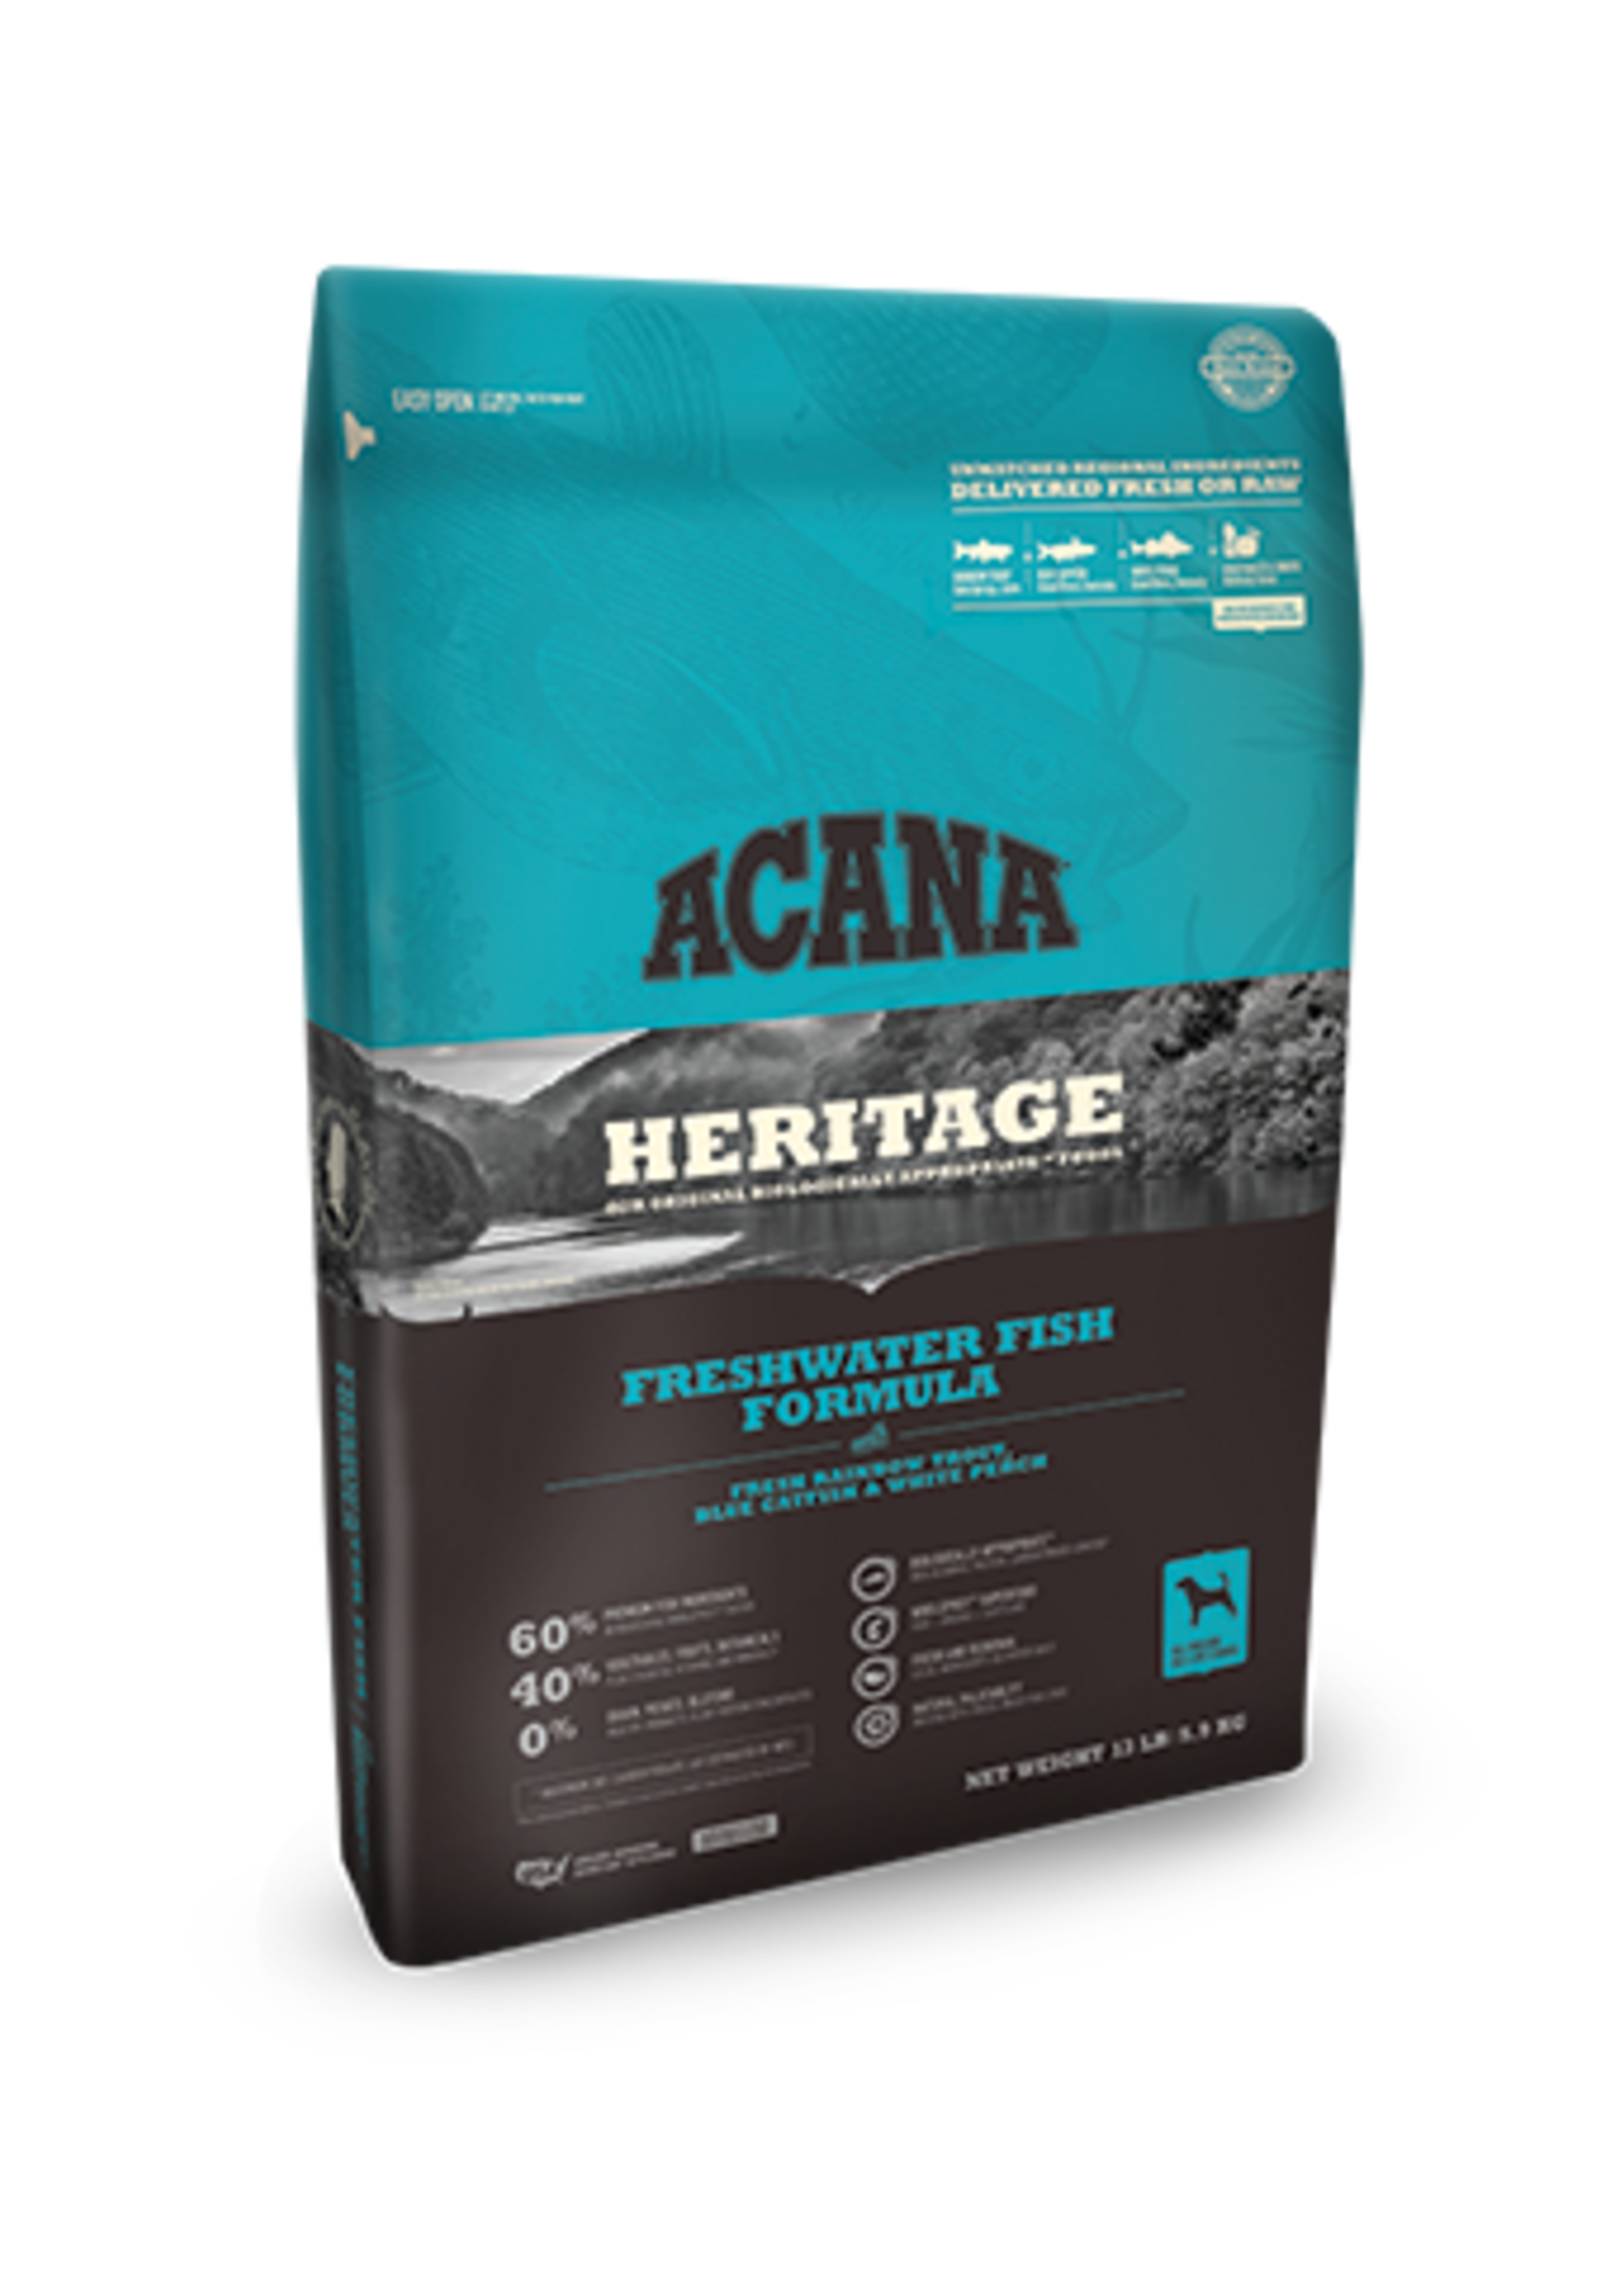 Acana Heritage Dog Food Freshwater Fish